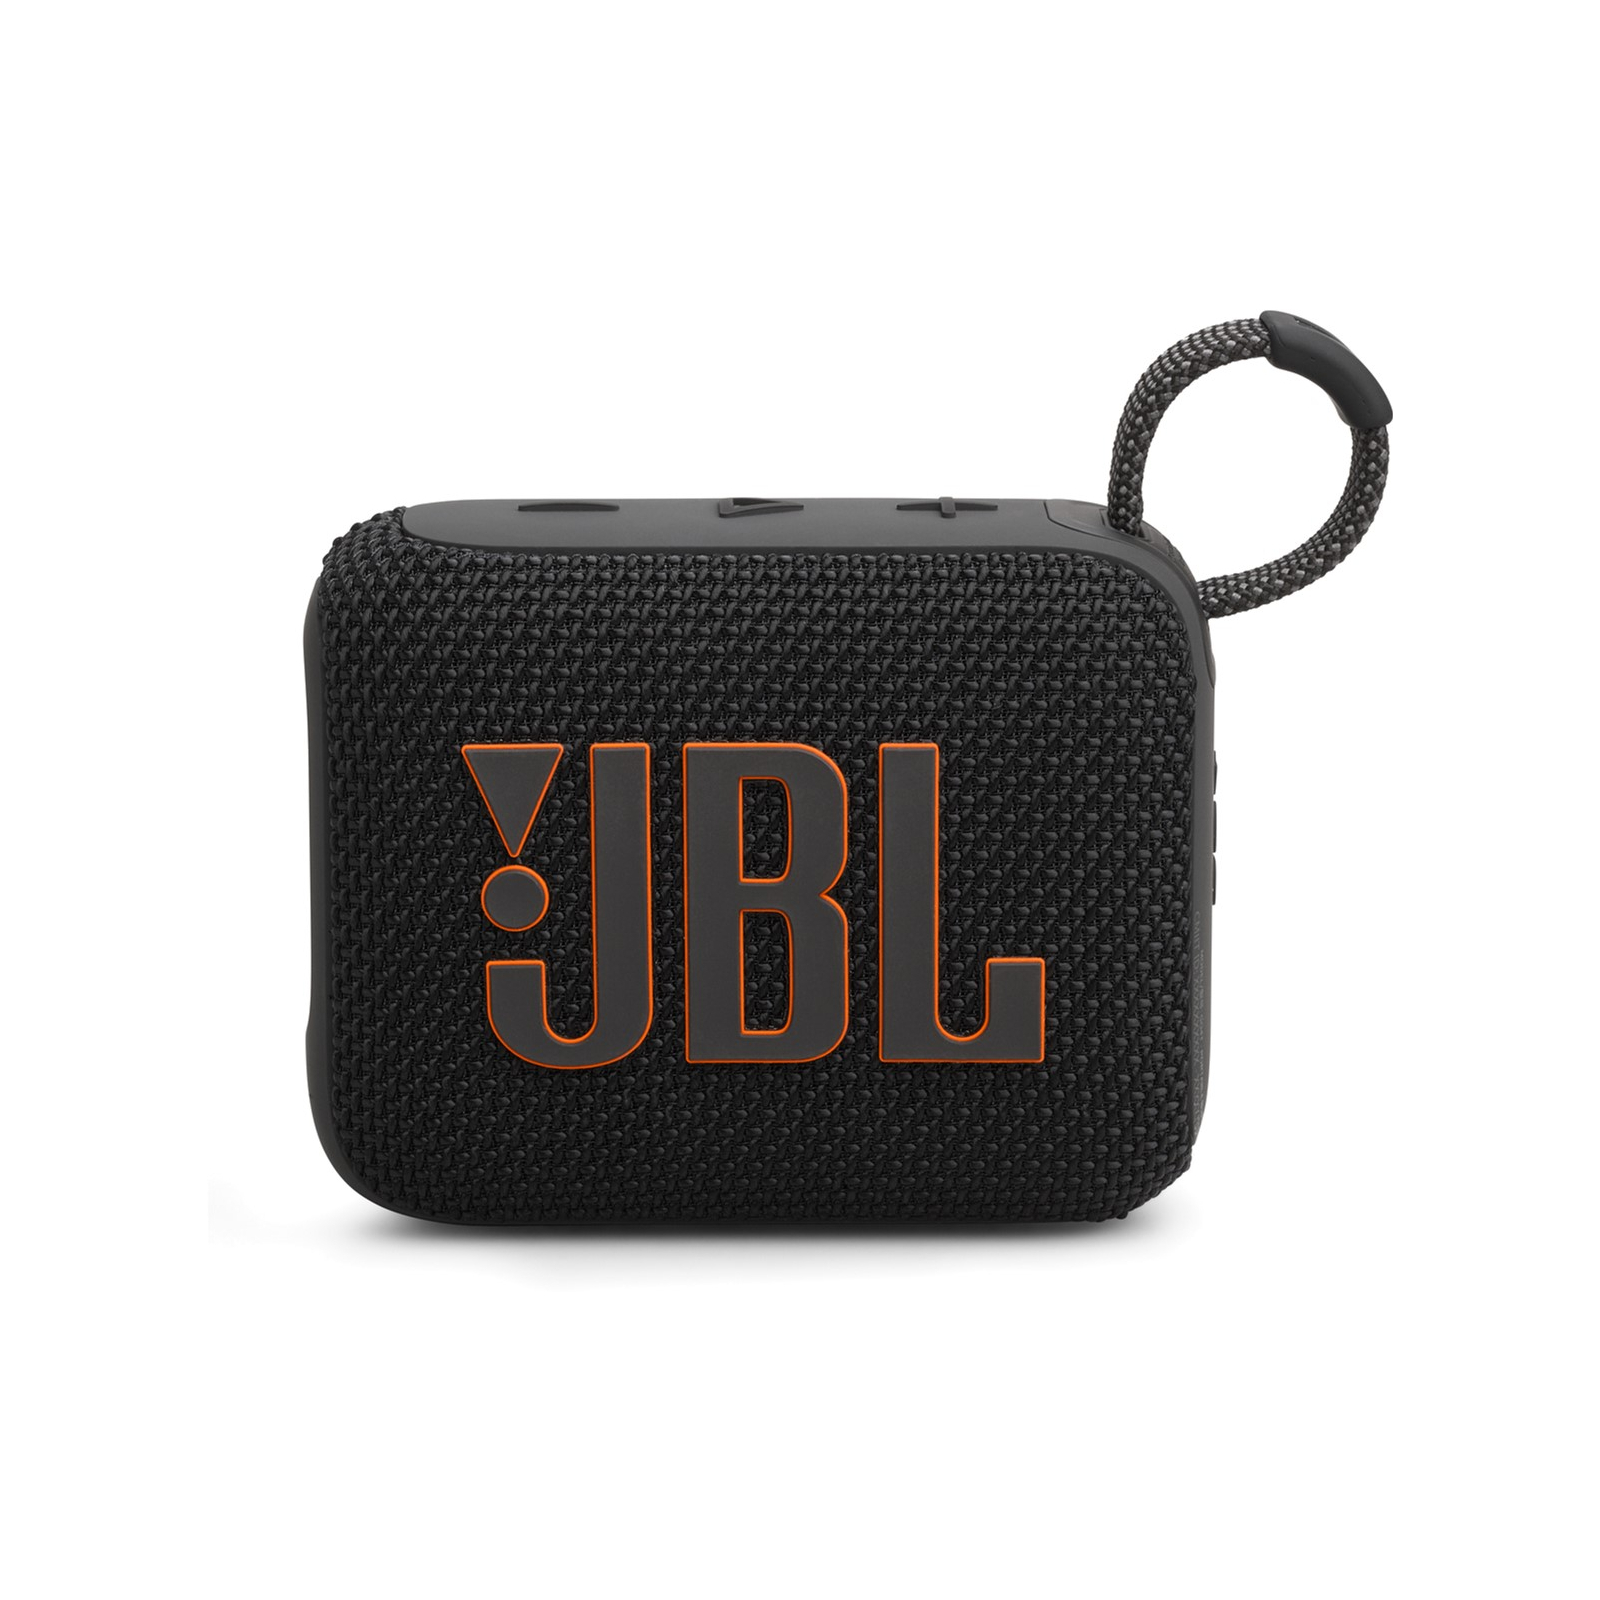 Акустическая система JBL Go 4 Blue (JBLGO4BLU) изображение 3